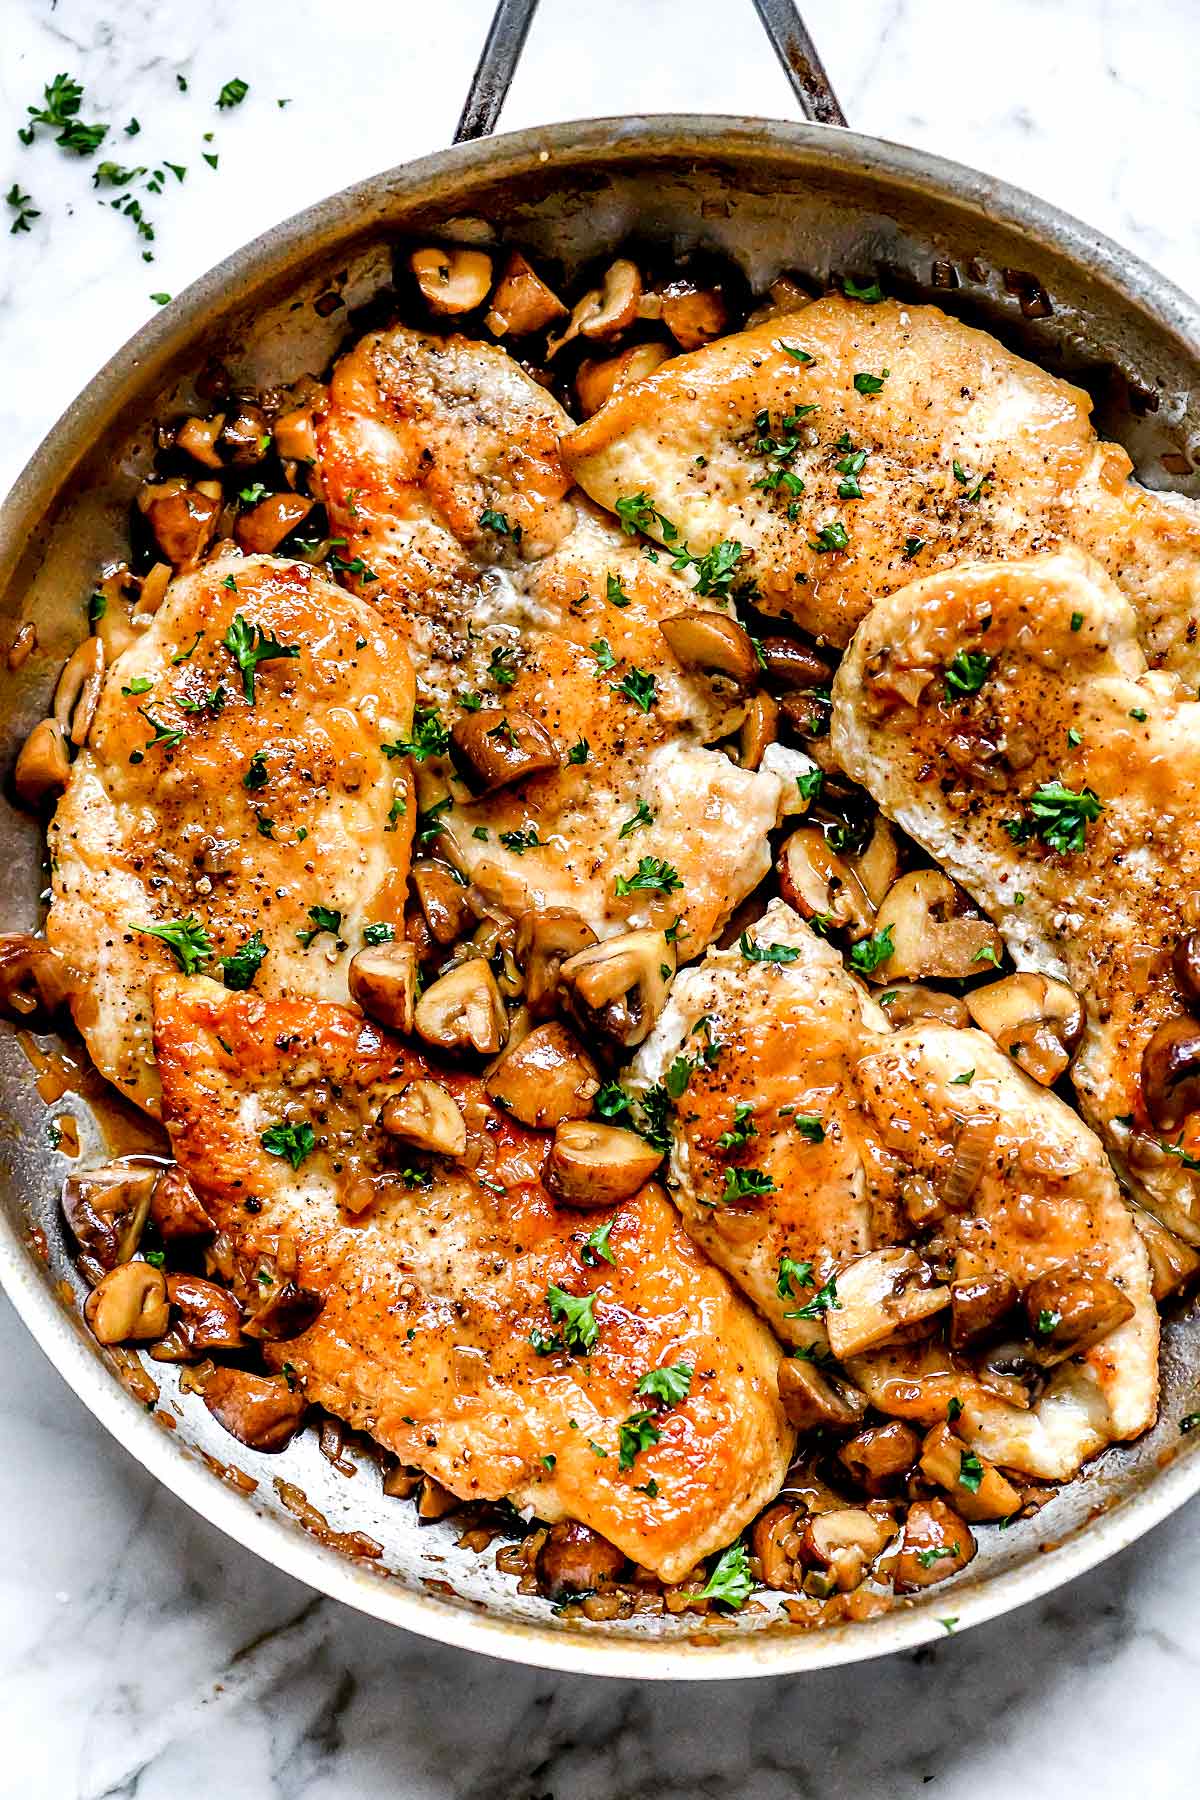 Chicken Marsala Recipe